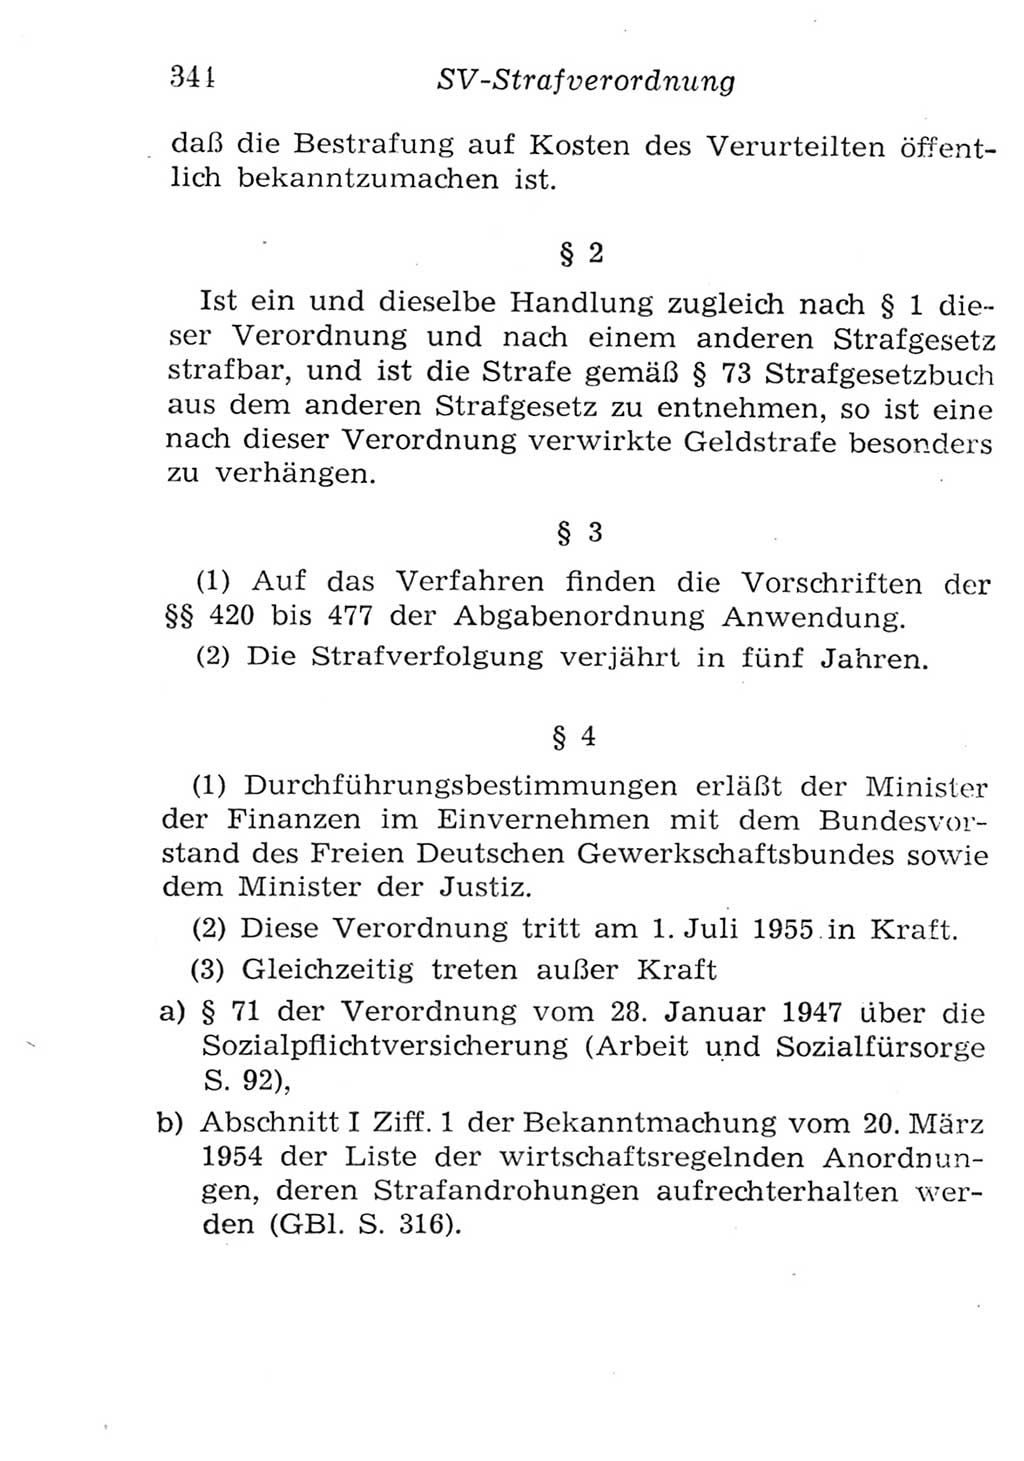 Strafgesetzbuch (StGB) und andere Strafgesetze [Deutsche Demokratische Republik (DDR)] 1957, Seite 344 (StGB Strafges. DDR 1957, S. 344)